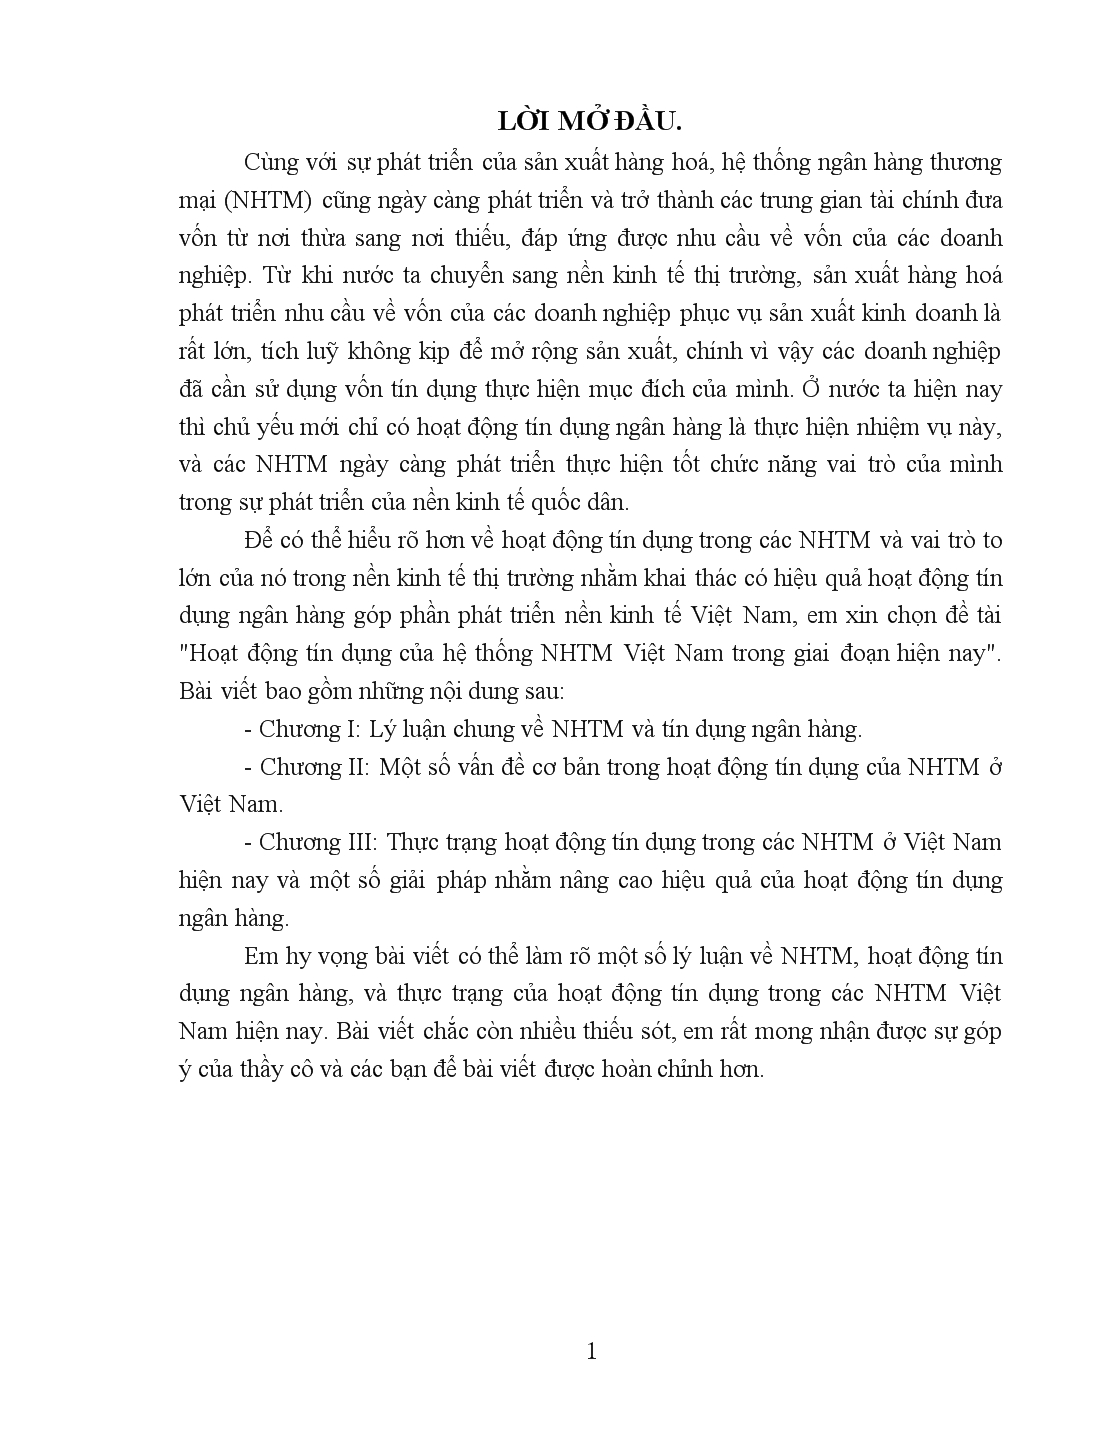 Đề tài Hoạt động tín dụng của hệ thống NHTM Việt Nam trong giai đoạn hiện nay trang 1